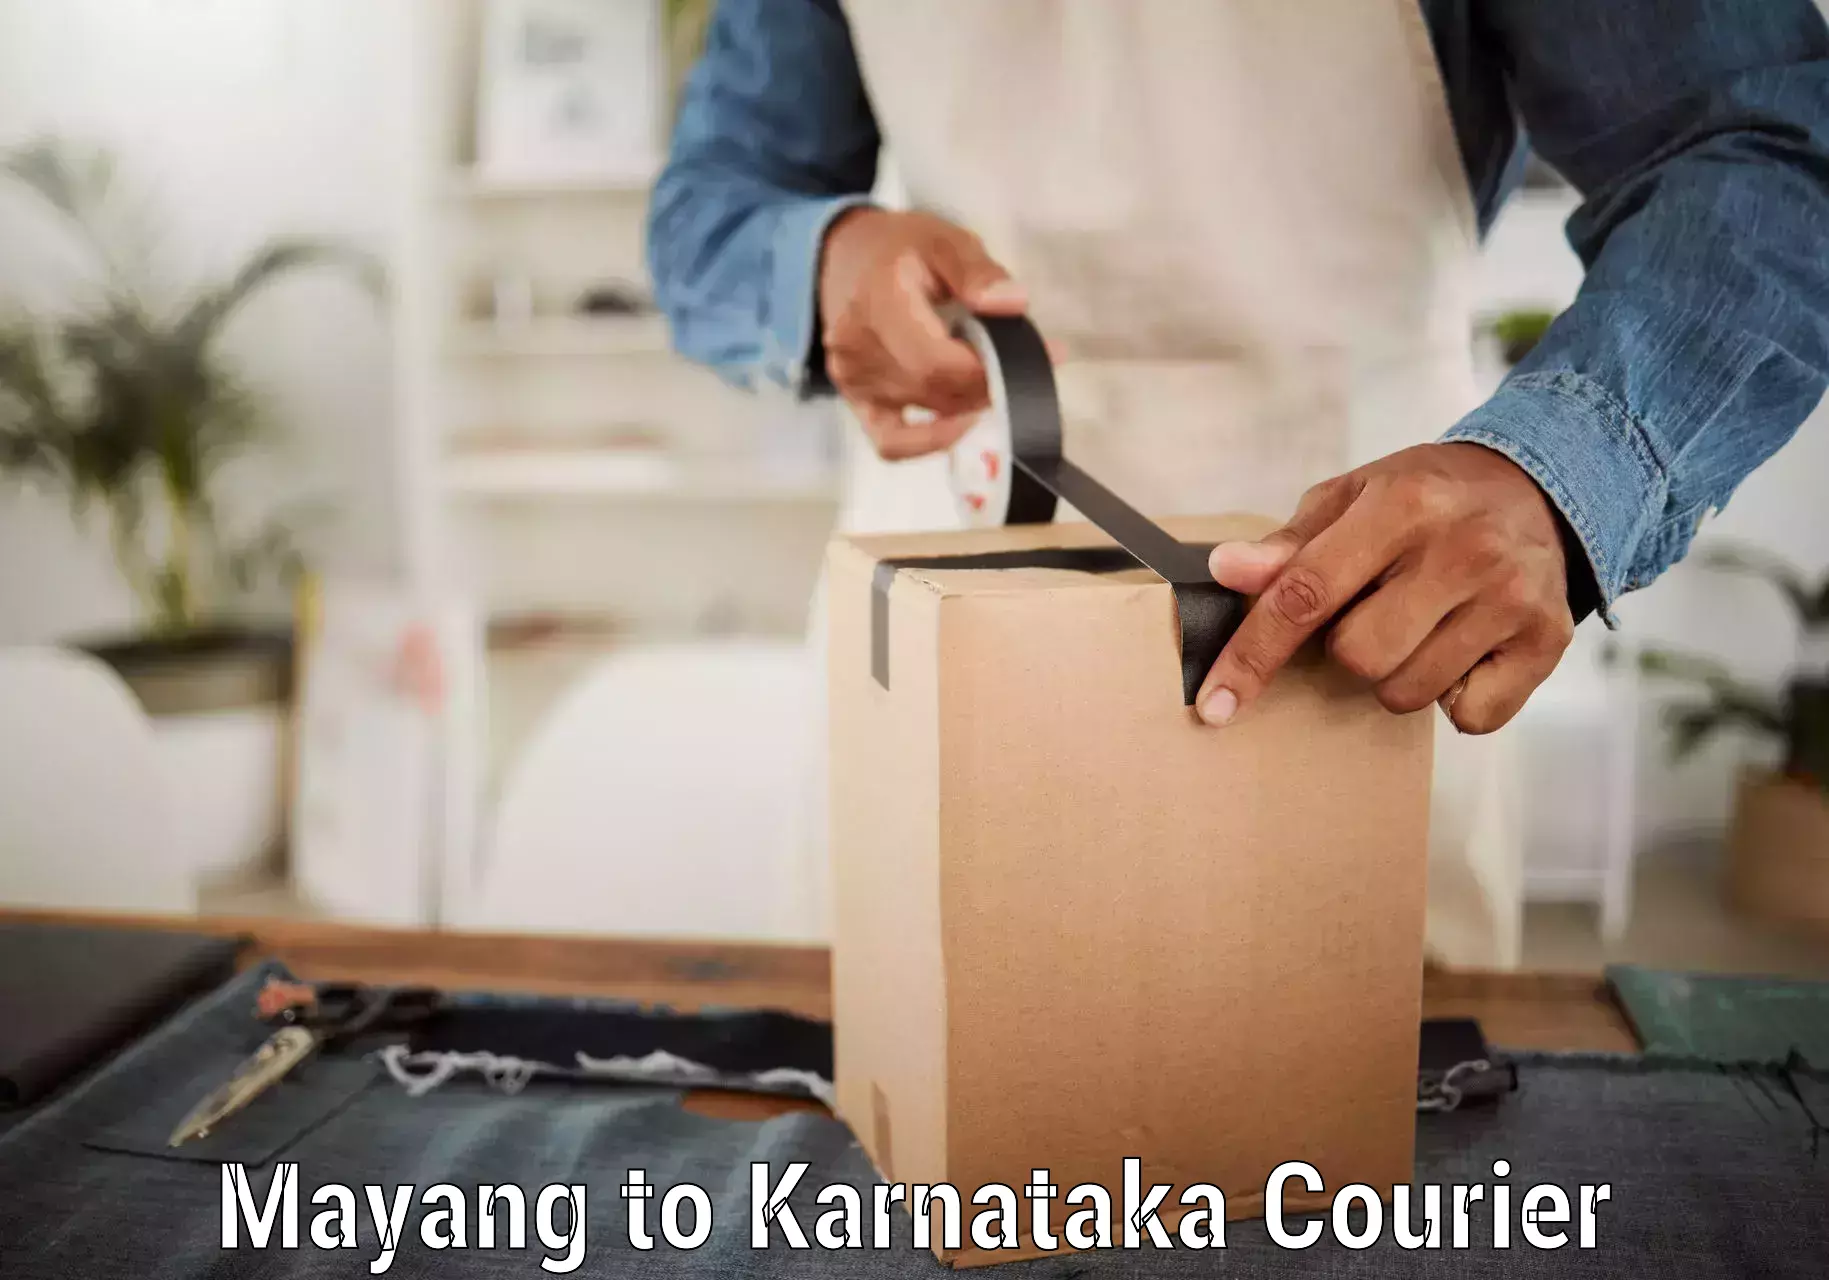 Custom courier packaging Mayang to Kanjarakatte